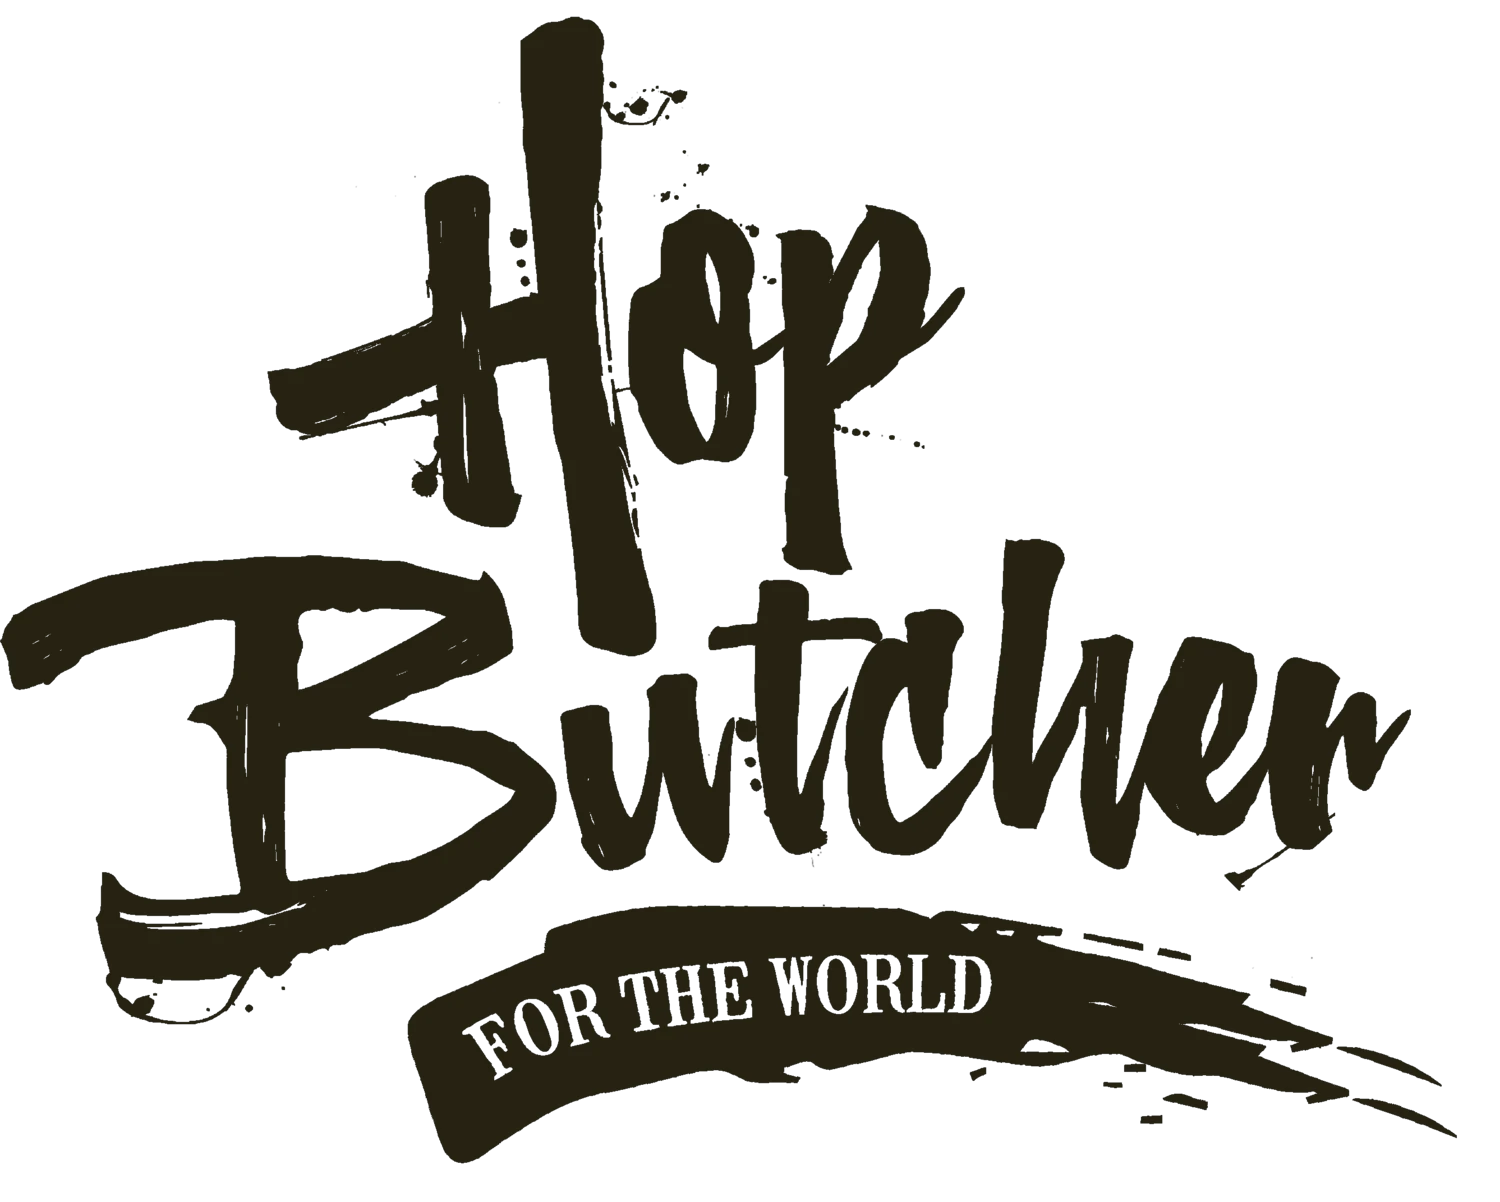 hopbutcher.com